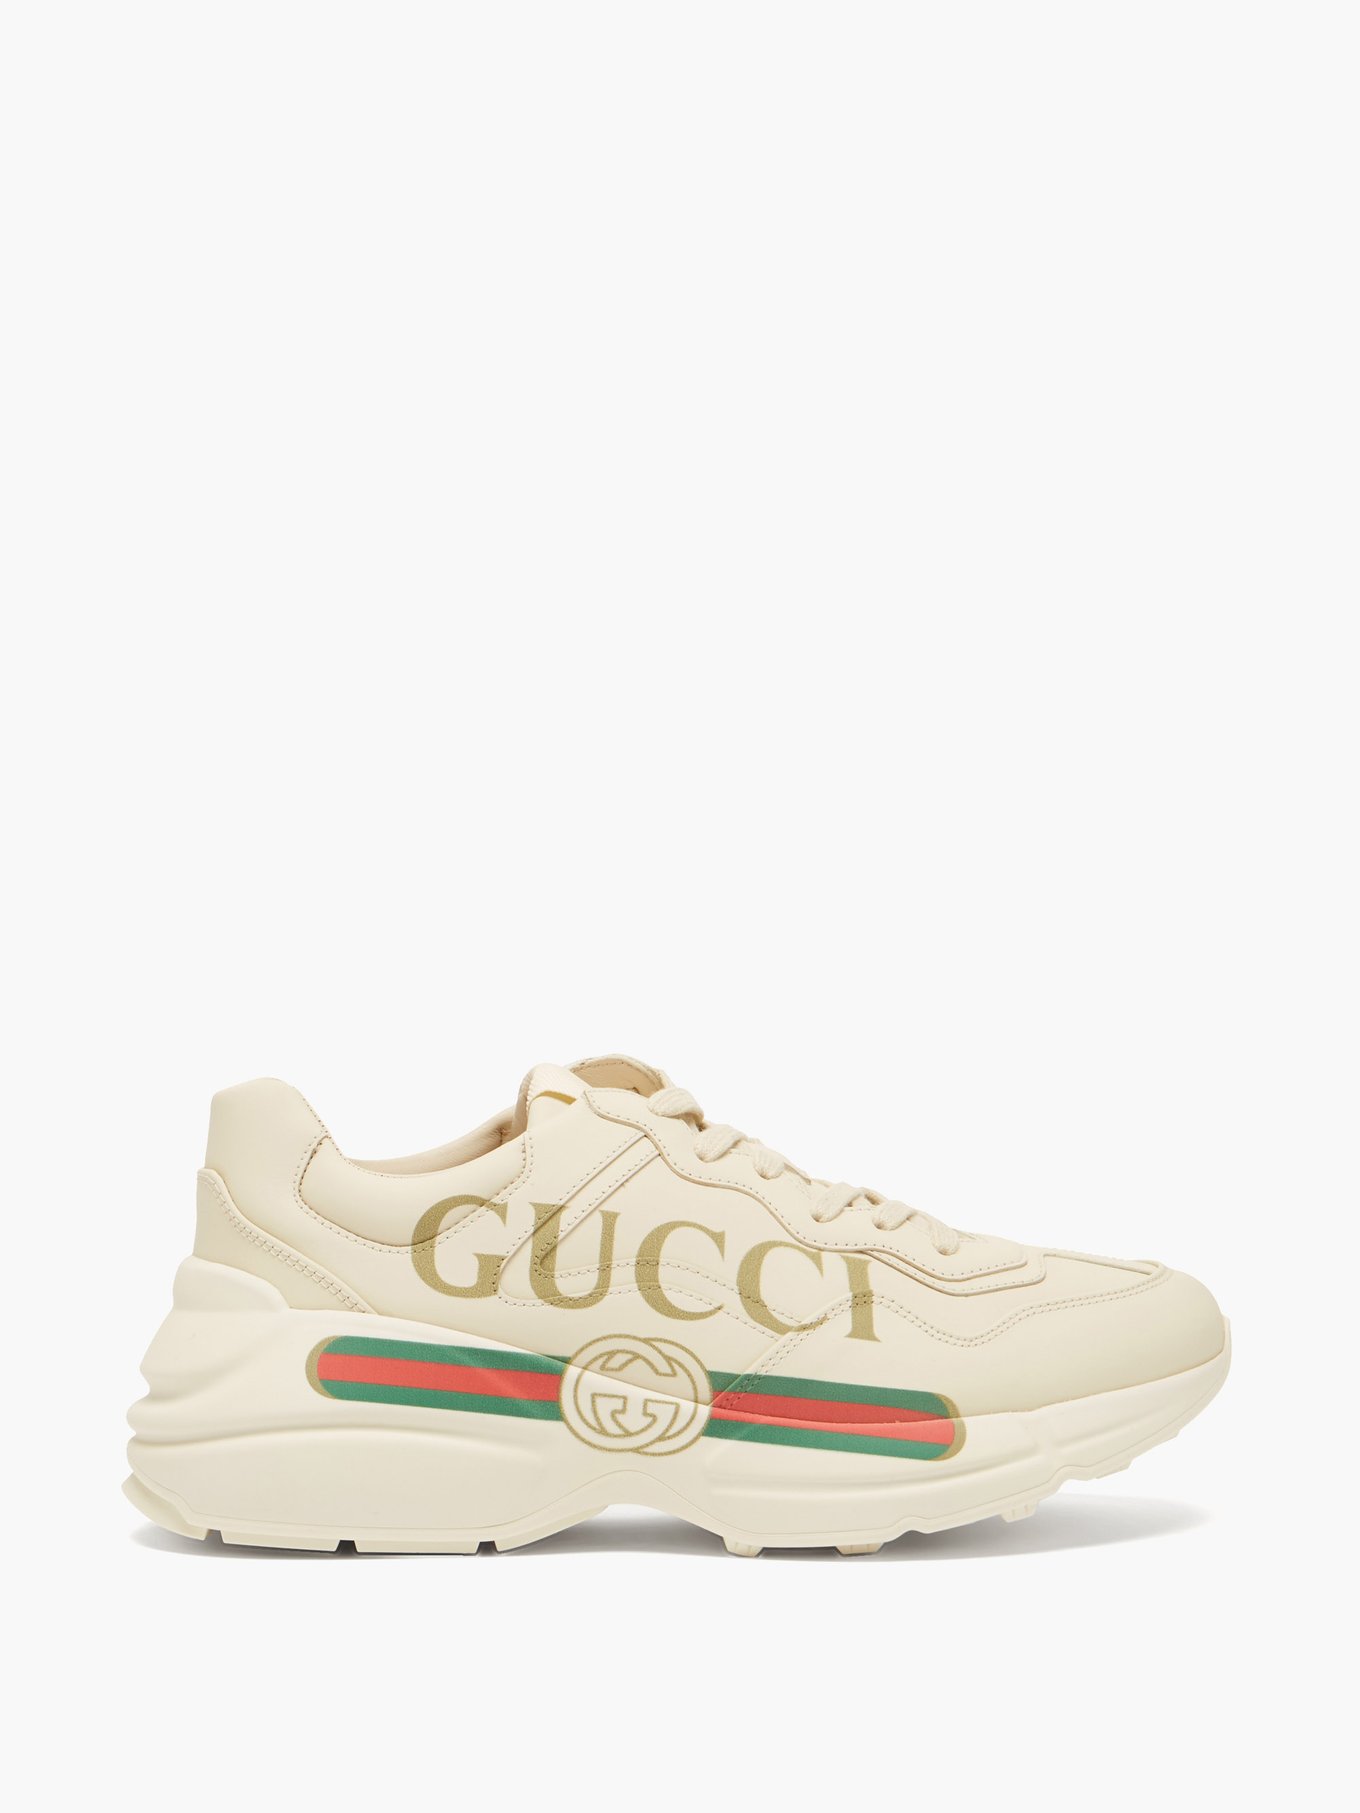 Gucci, Shoes, Gucci Shoes